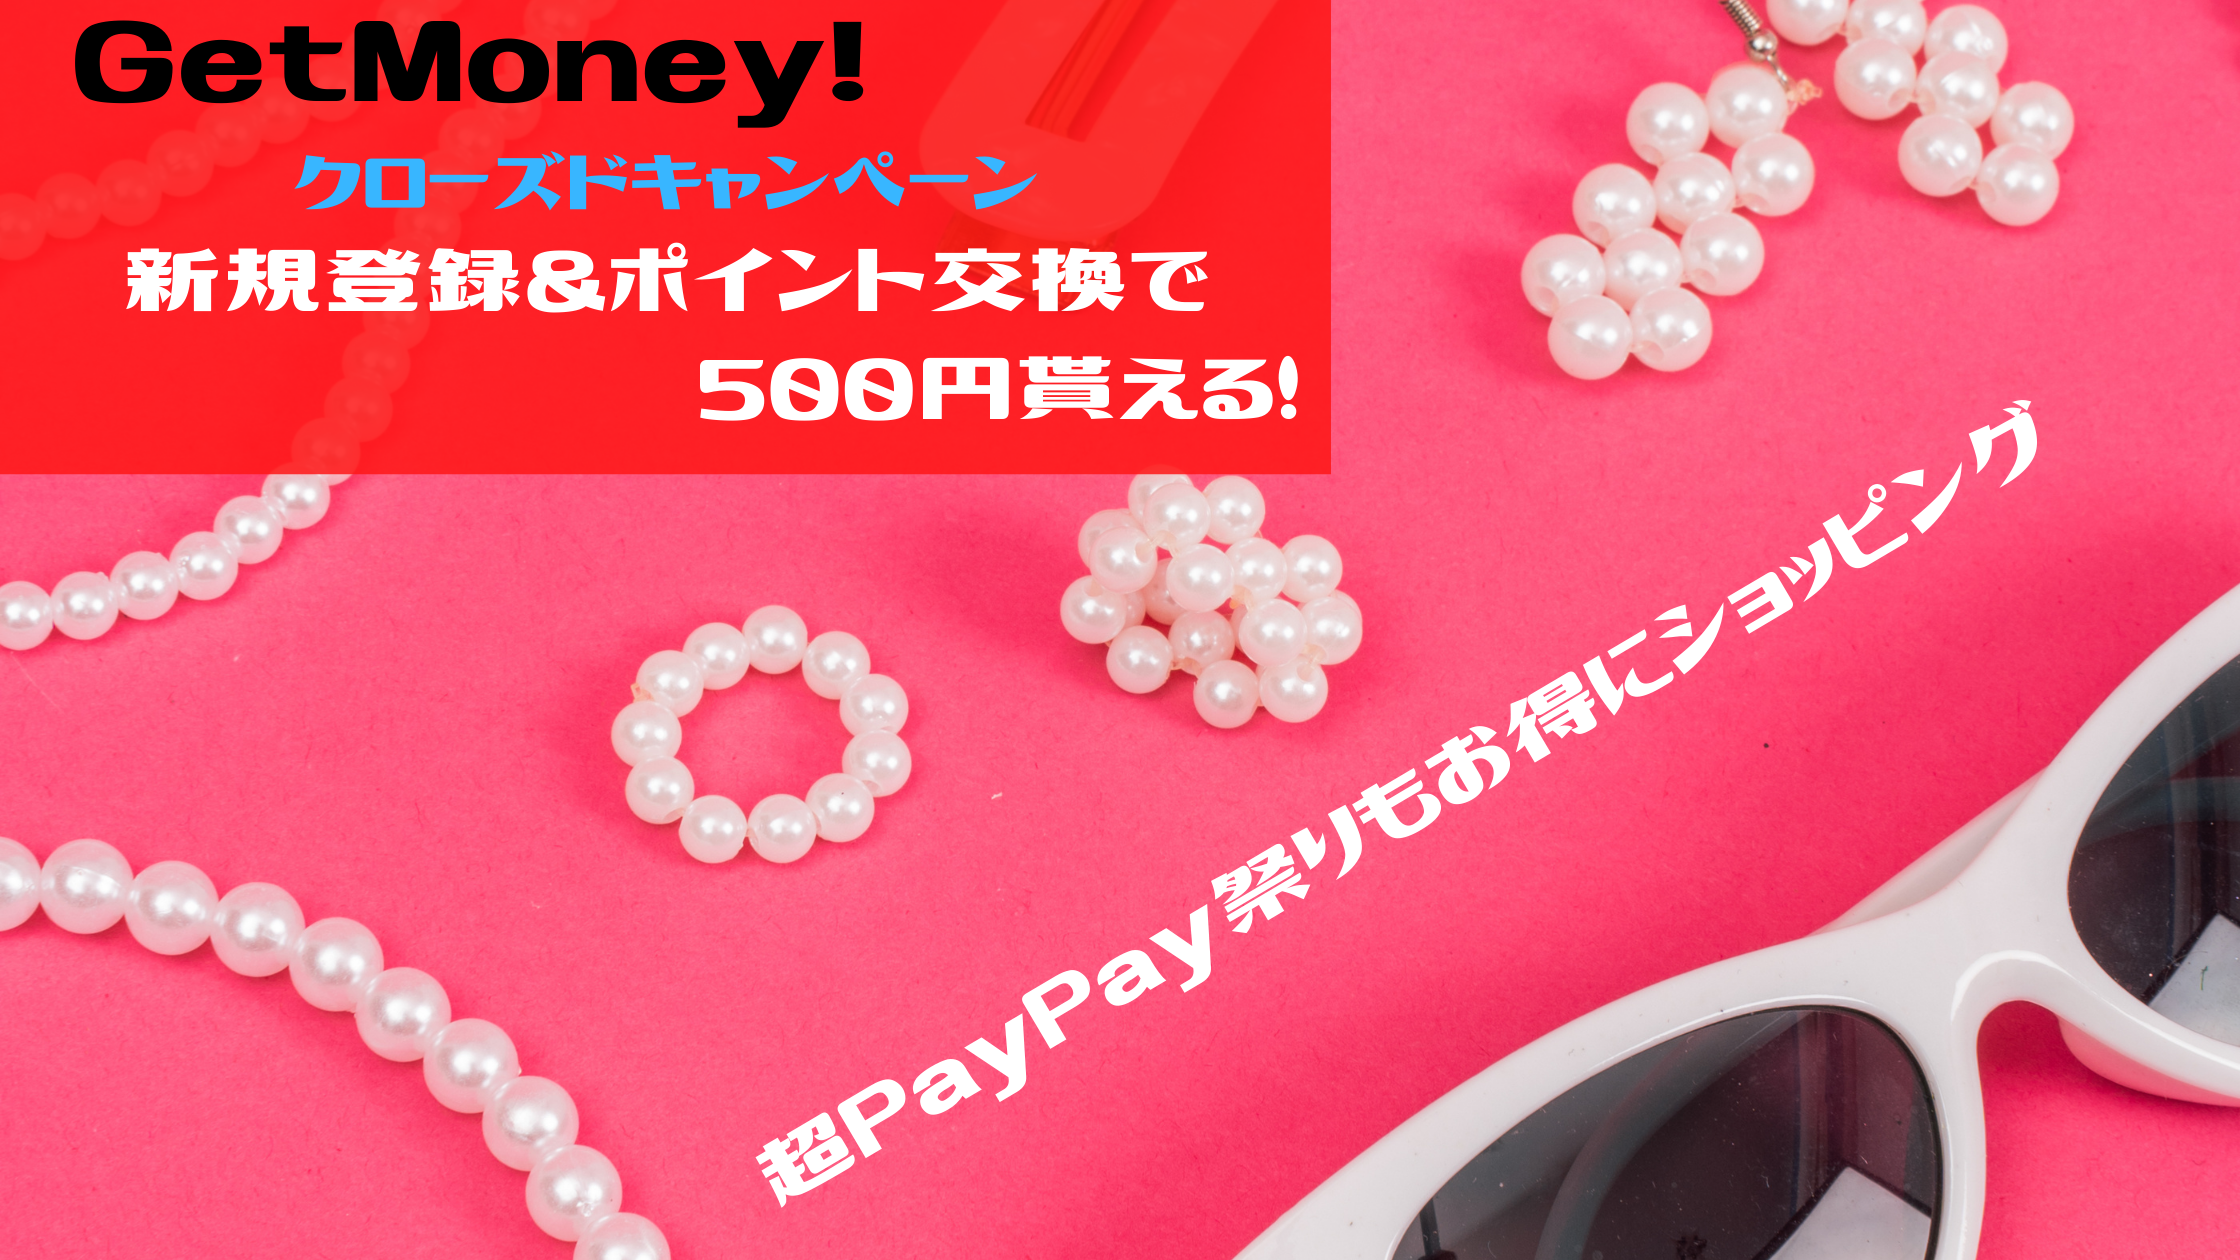 超PayPay祭りもお得に利用できる。GetMoney!の入会キャンペーン